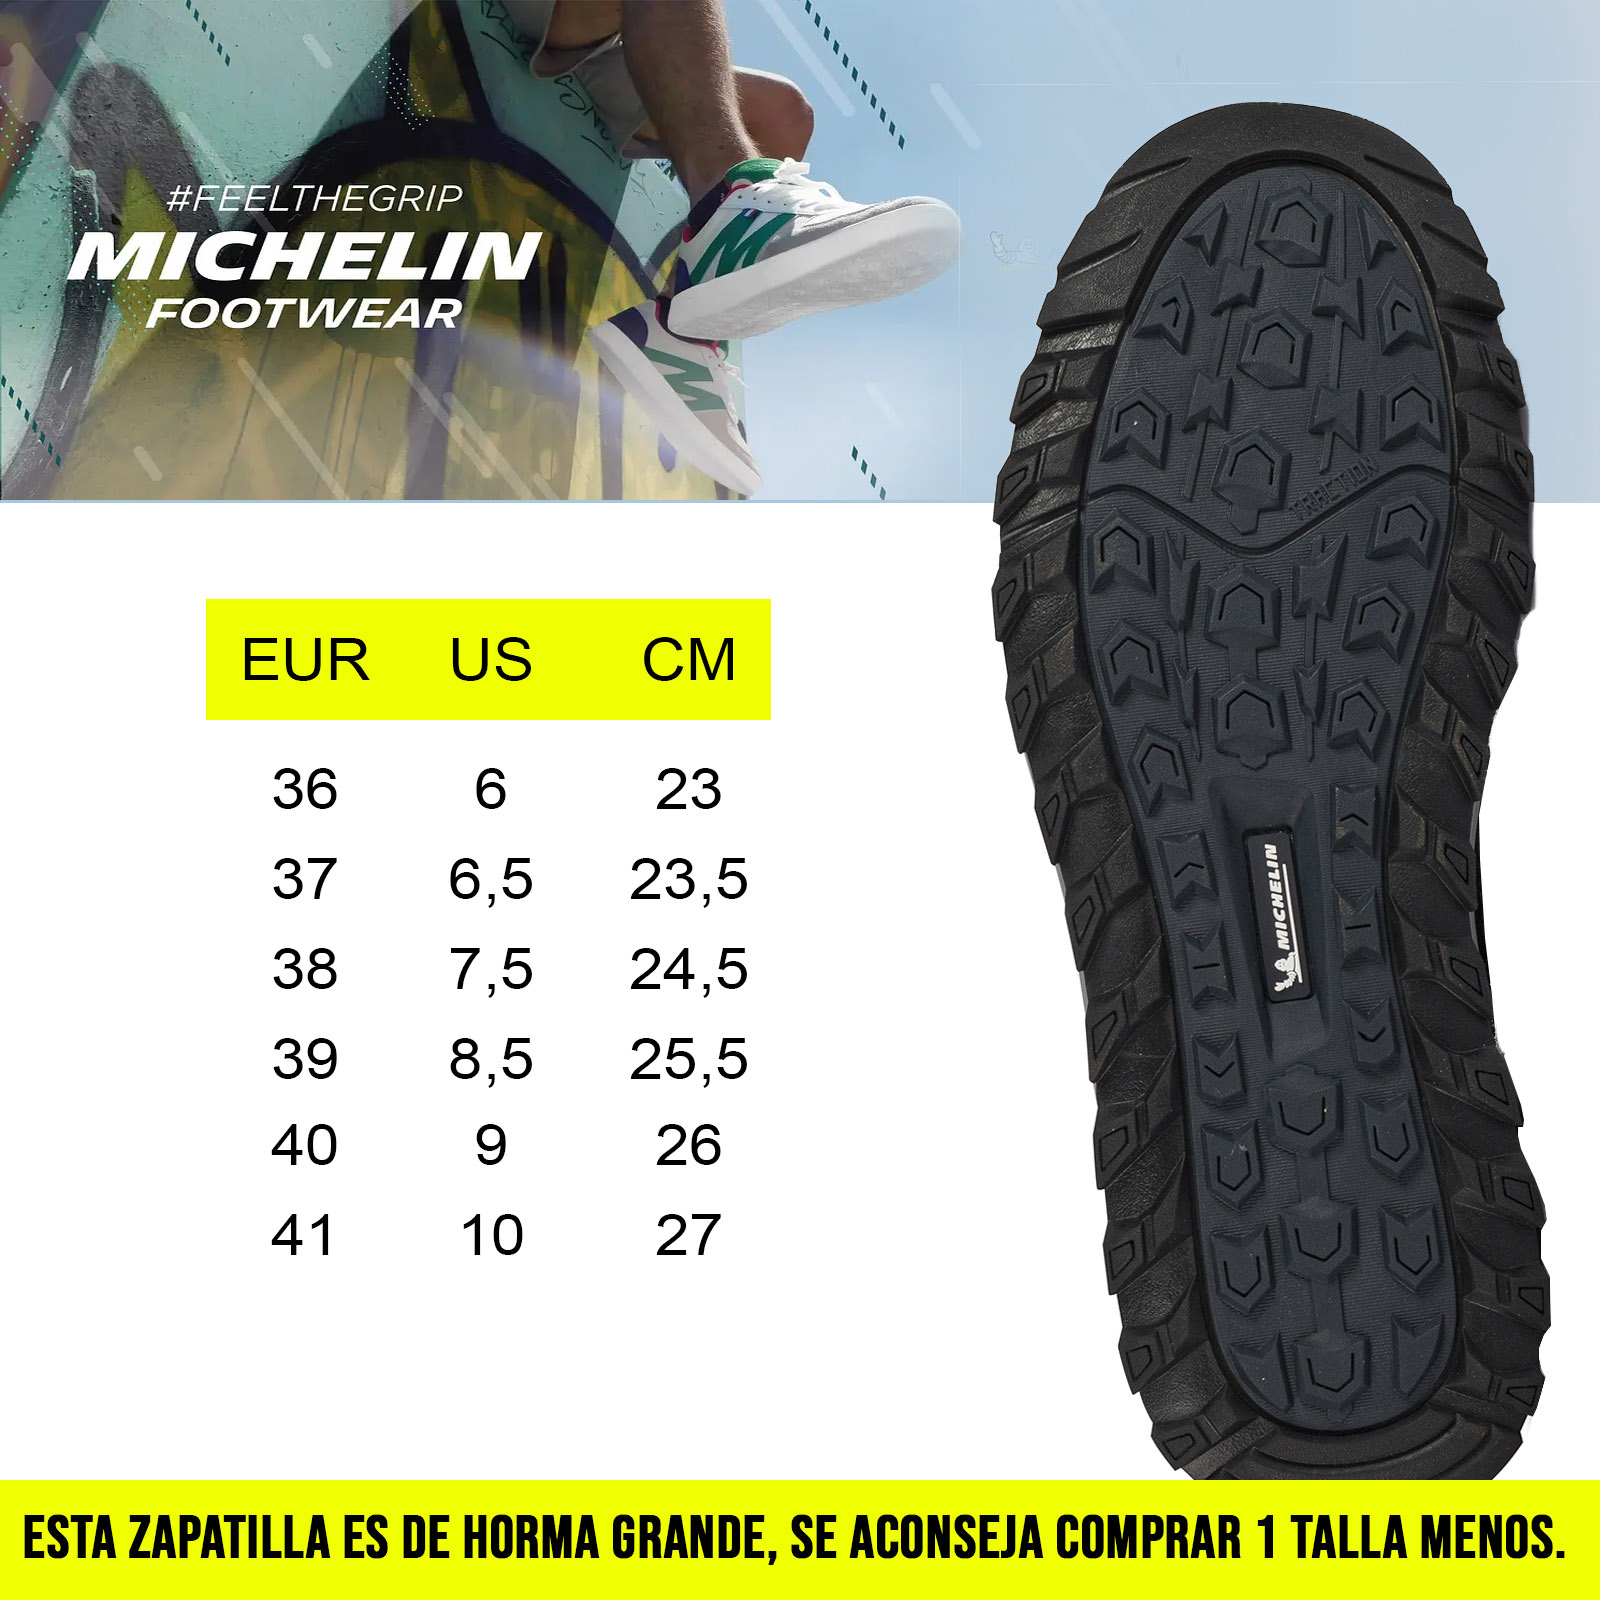 Zapatilla Urbana Street PS14 Mujer Blanco Verde Michelin Footwear